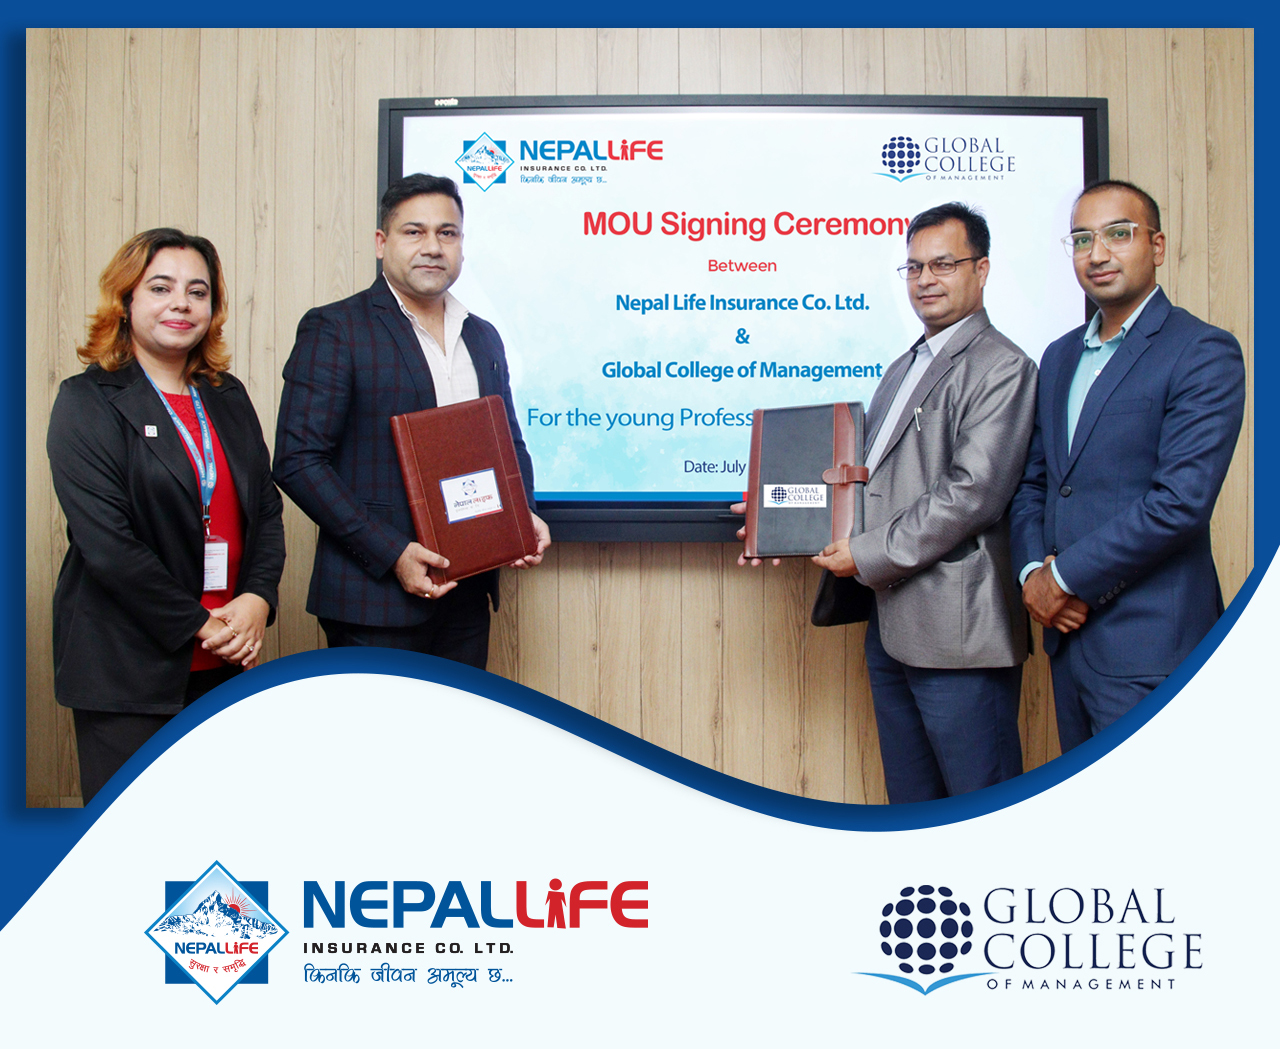 नेपाल लाइफ र ग्लोबल कलेजबीच सम्झौता